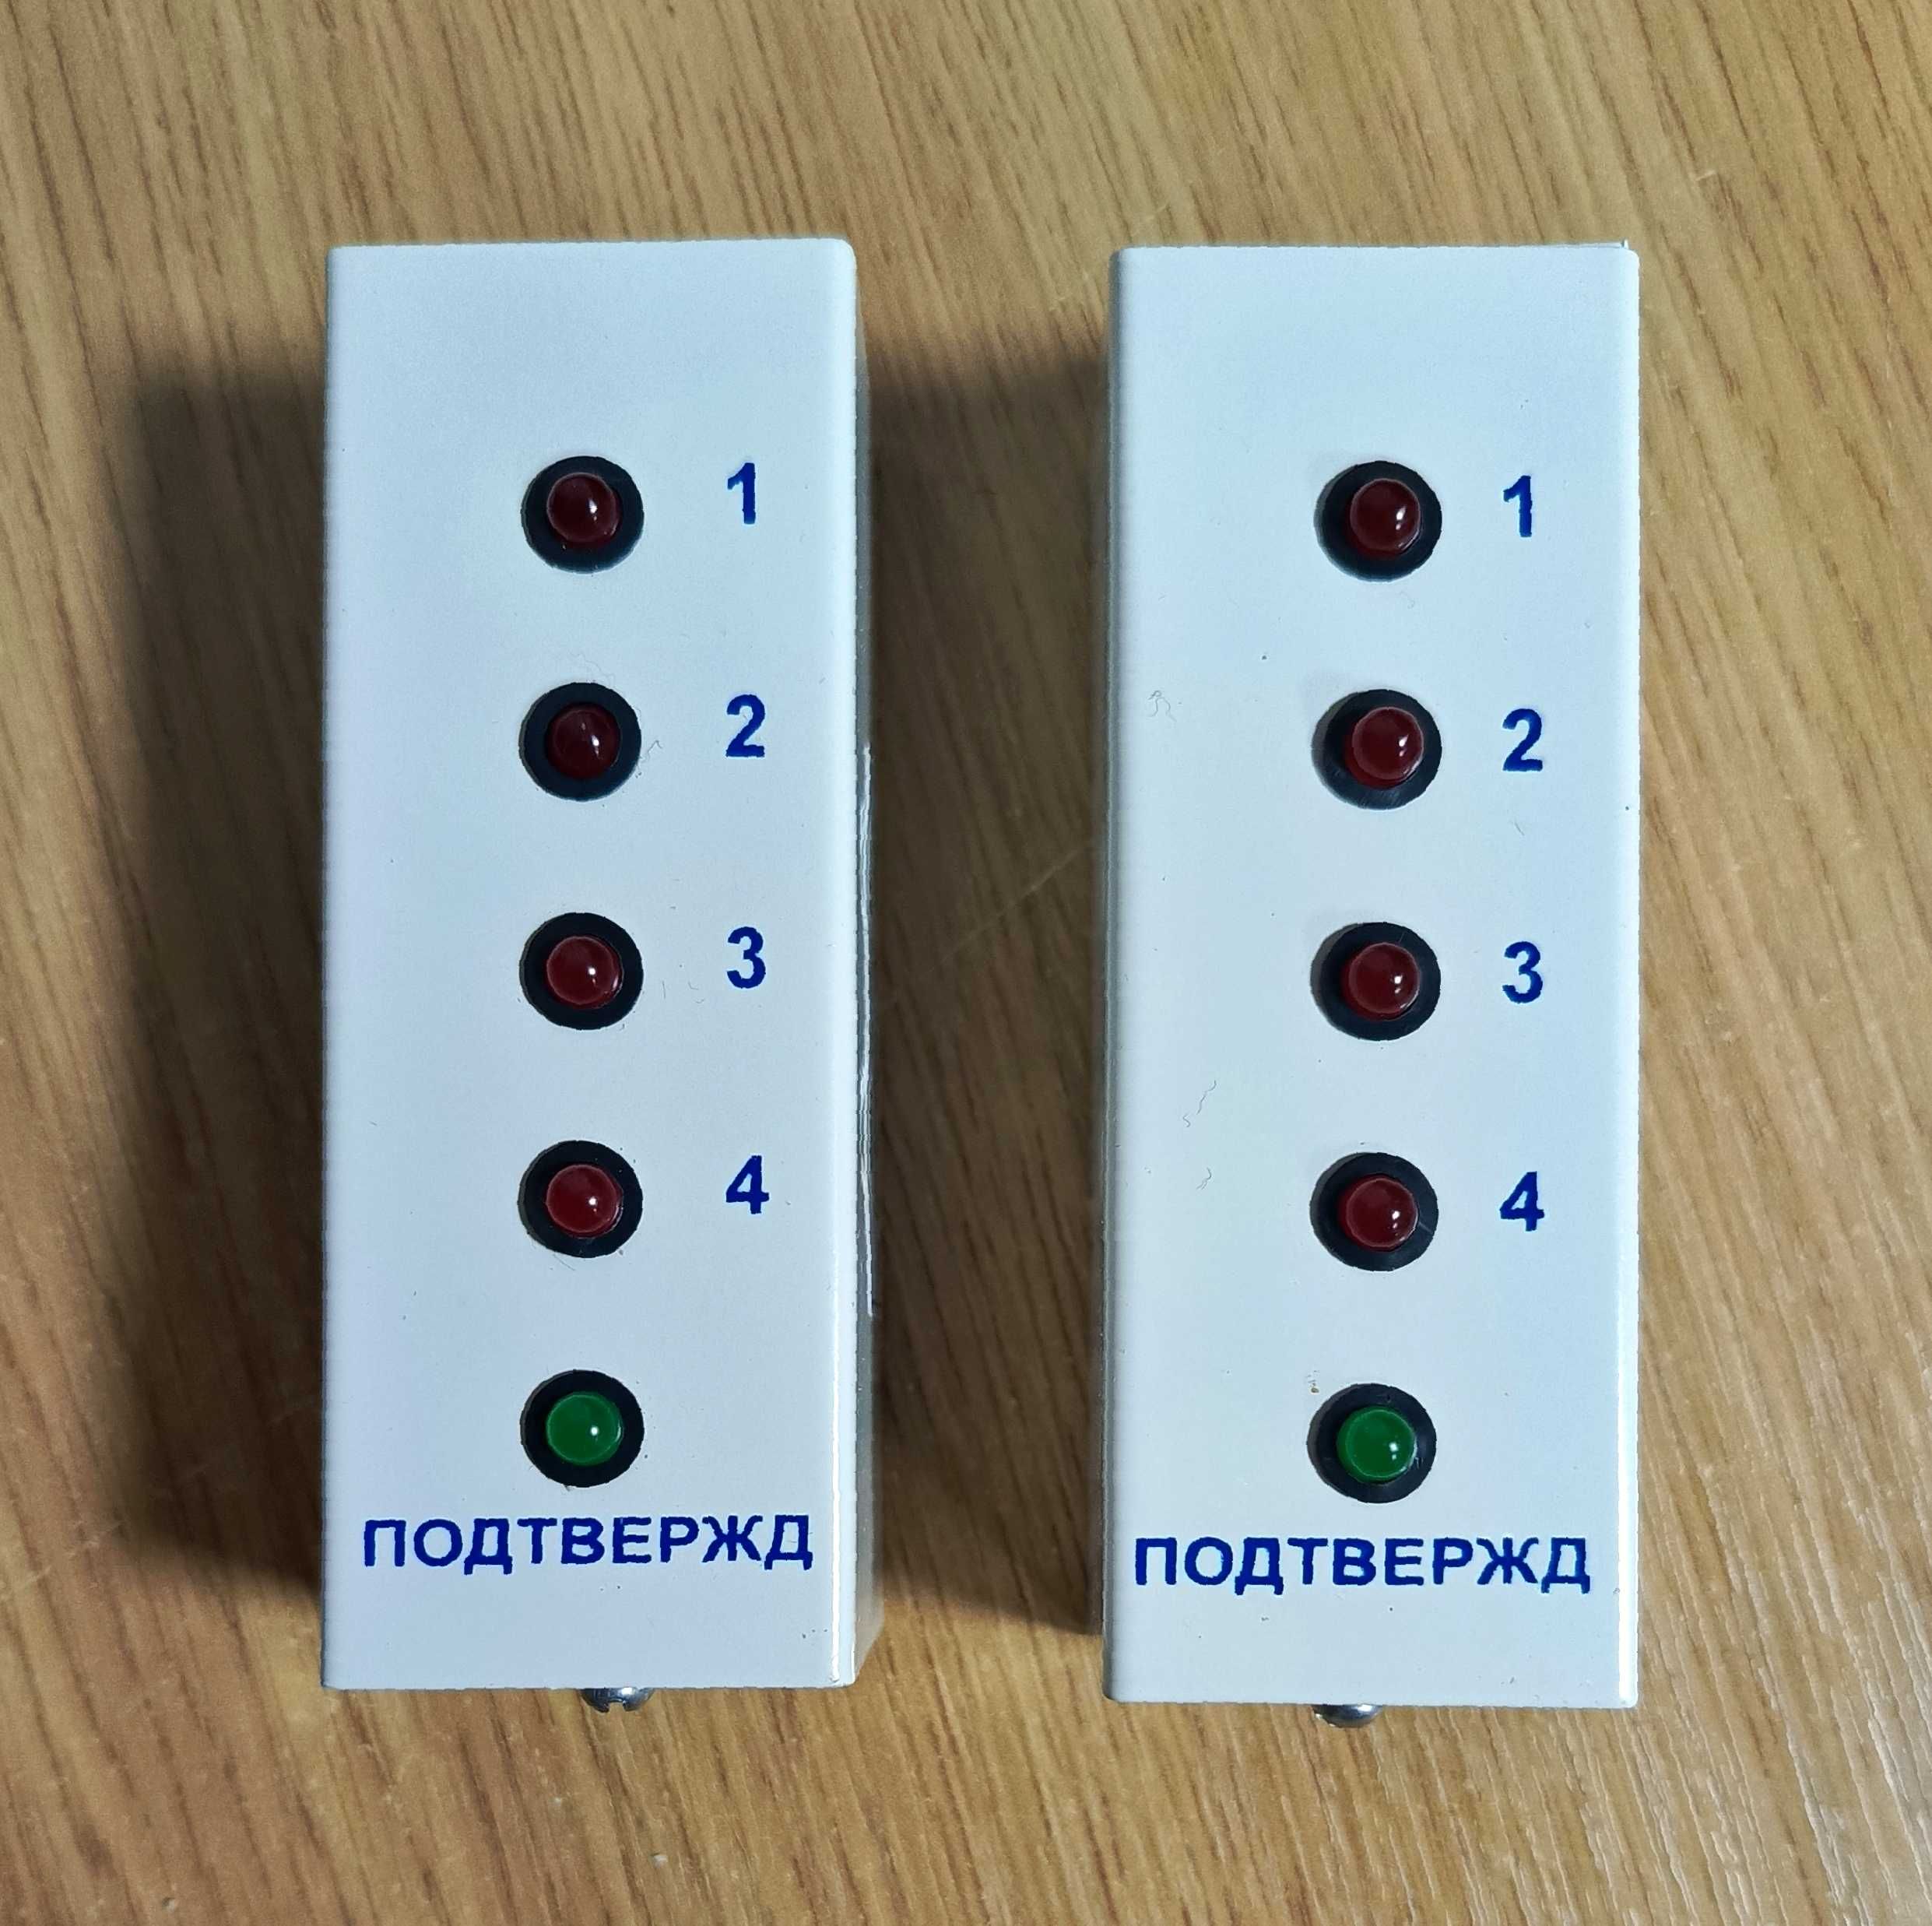 Выносные индикаторные панели для ППК сигнализации ВІП ОРІОН 4Т.